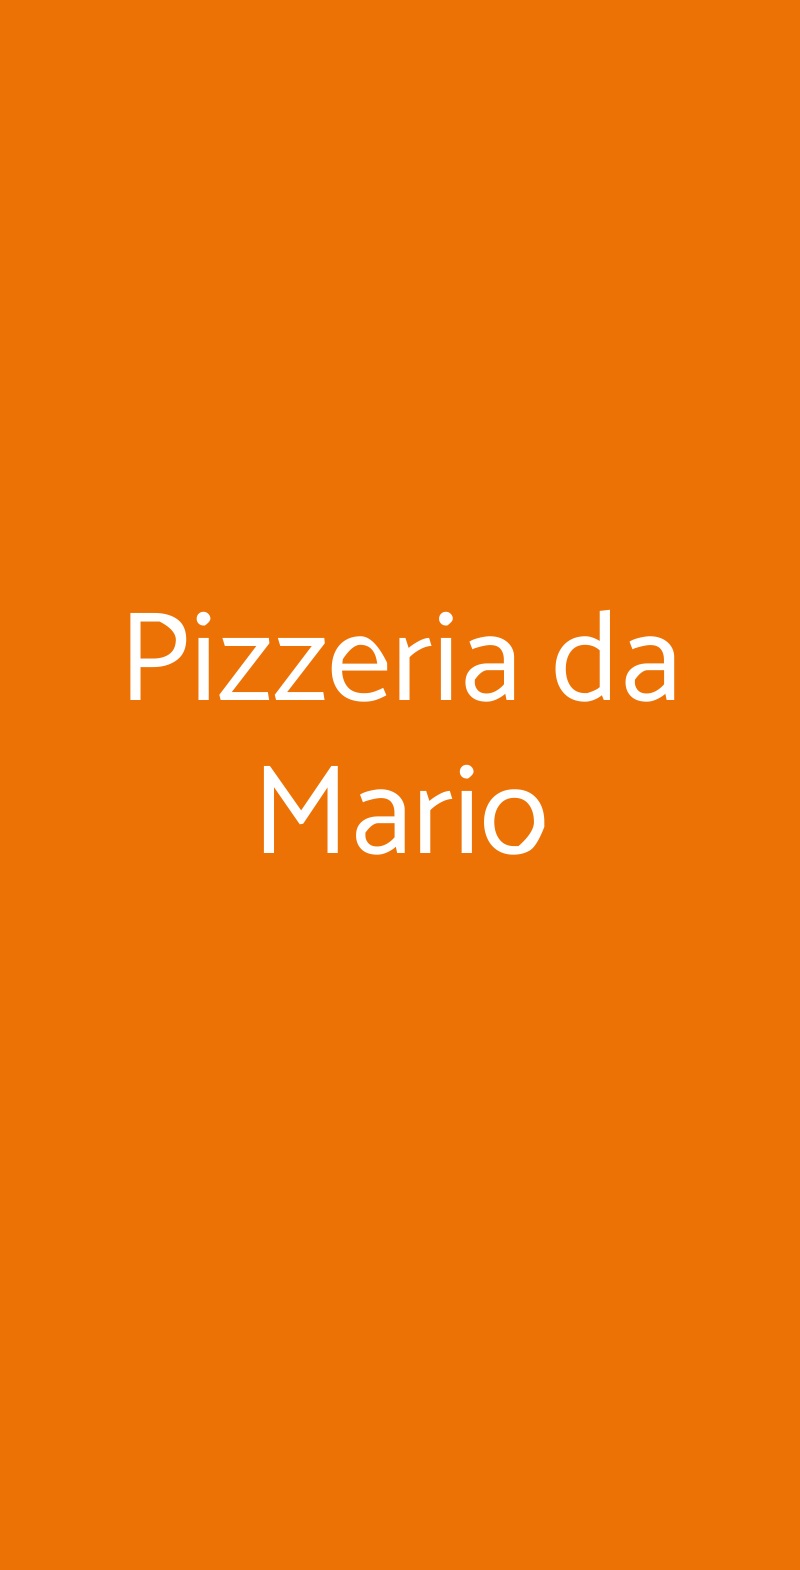 Pizzeria da Mario Napoli menù 1 pagina